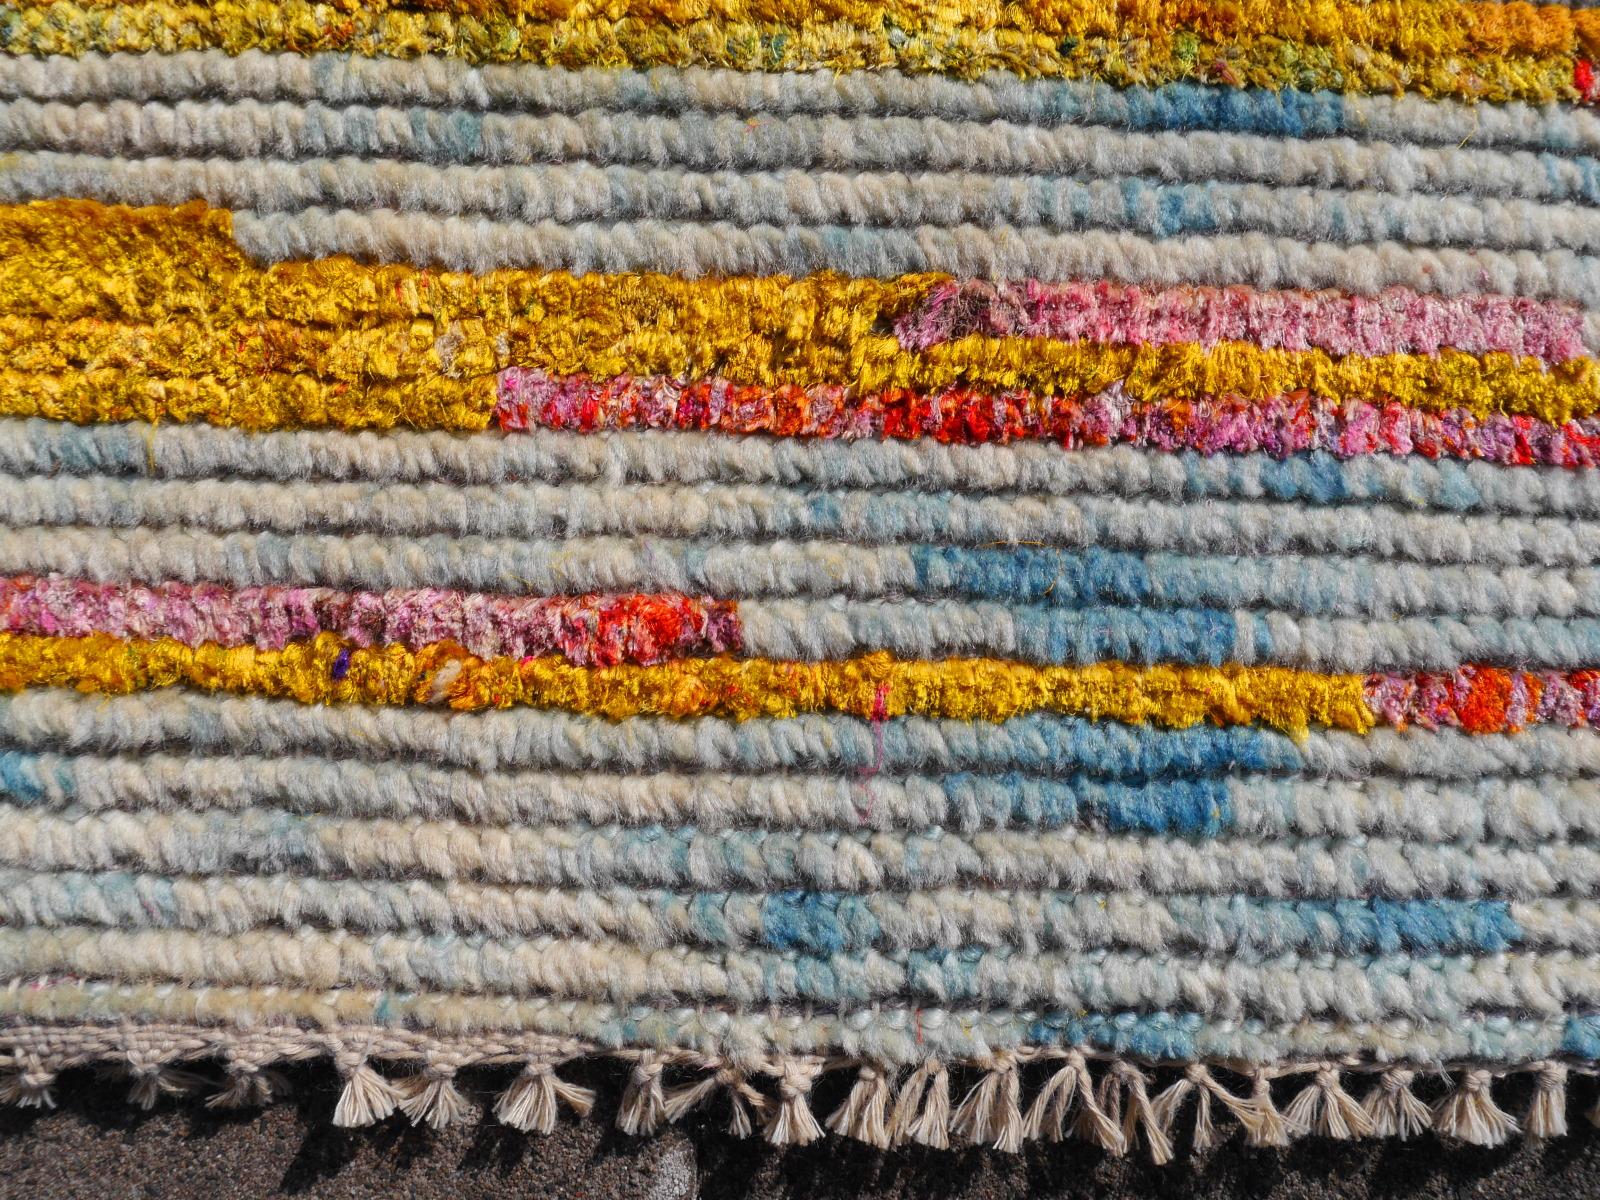 Ein wunderschöner Teppich mit zeitgenössischem Design, handgeknüpft aus Sari-Seide (60%) und Wolle (40%).

Collection: 